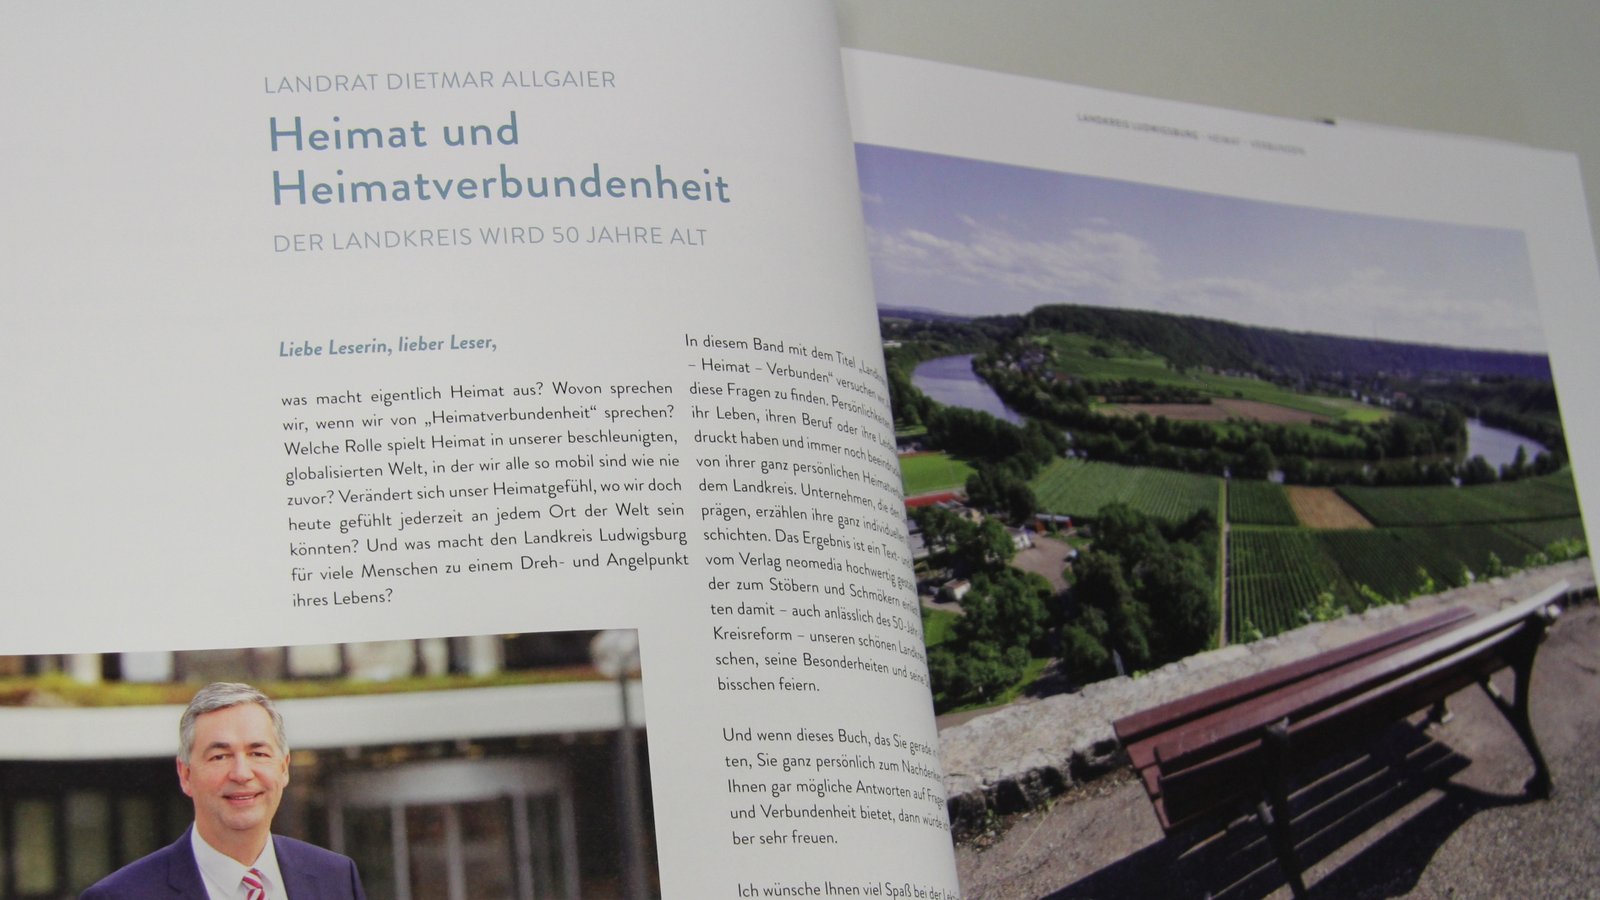 Landrat Dietmar Allgaier möchte mit dem Buch zum Nachdenken über Heimat anregen.